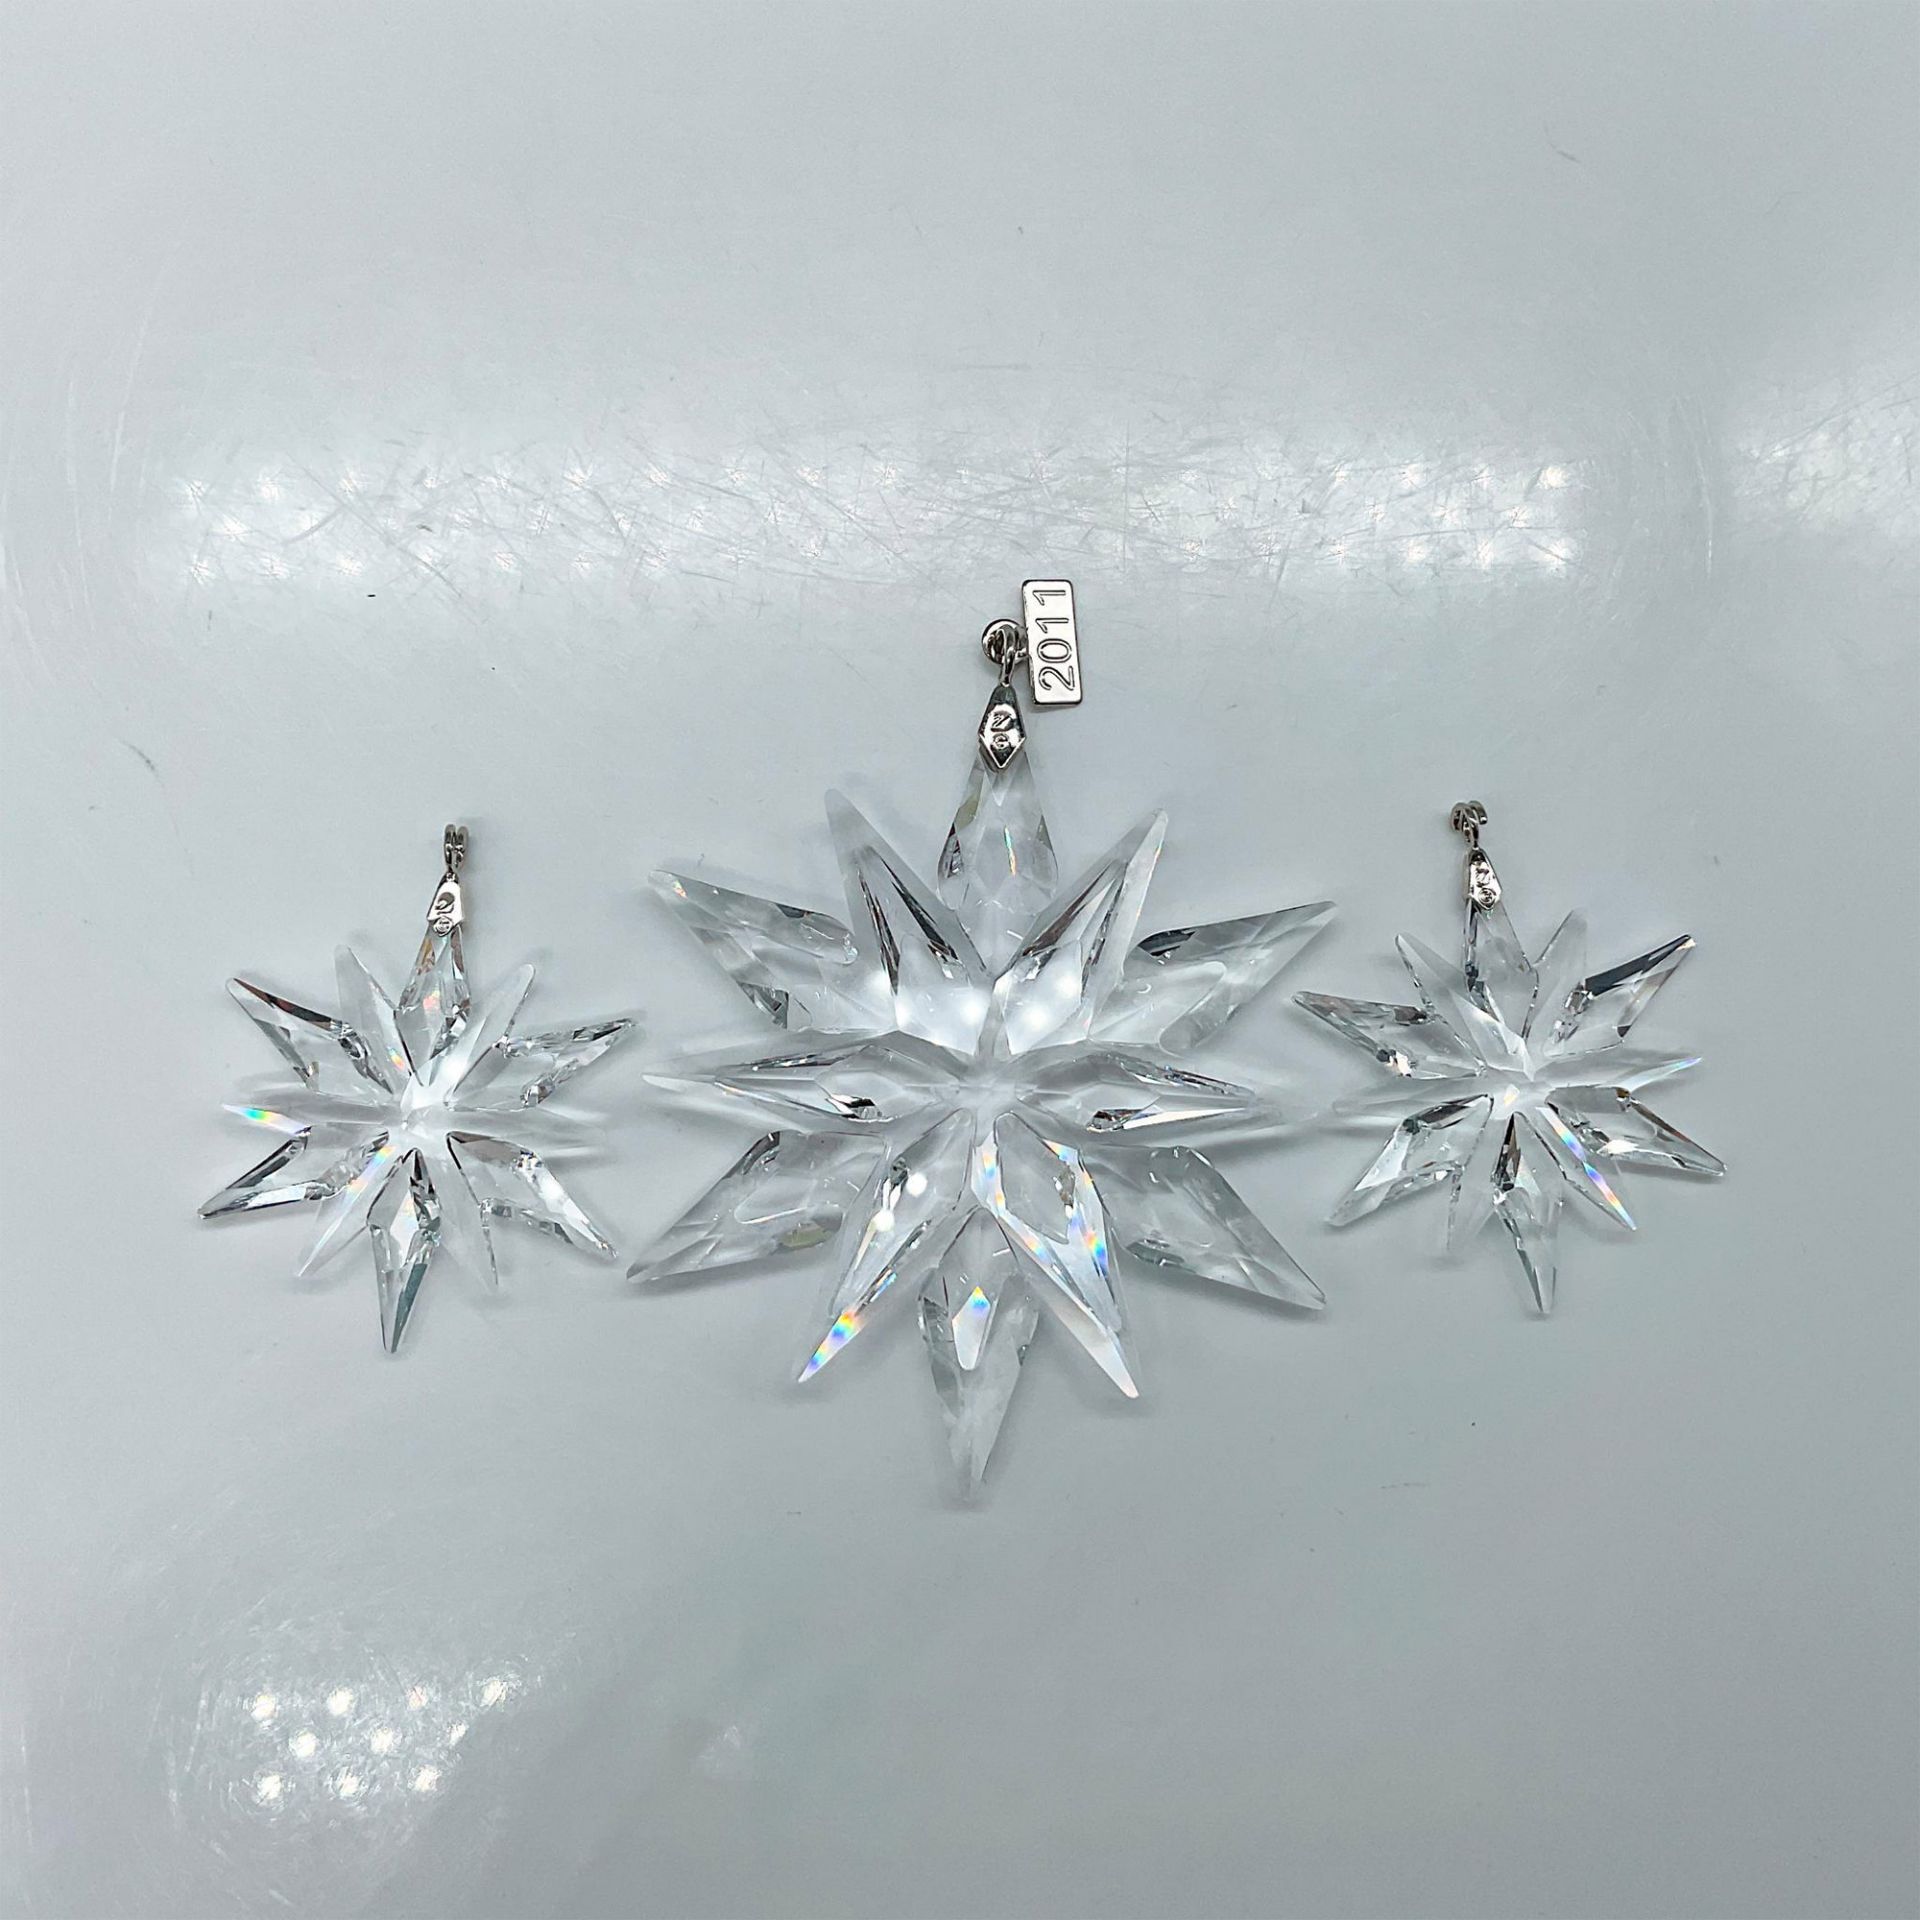 Swarovski Crystal 2011 Christmas Ornament Set - Image 2 of 3